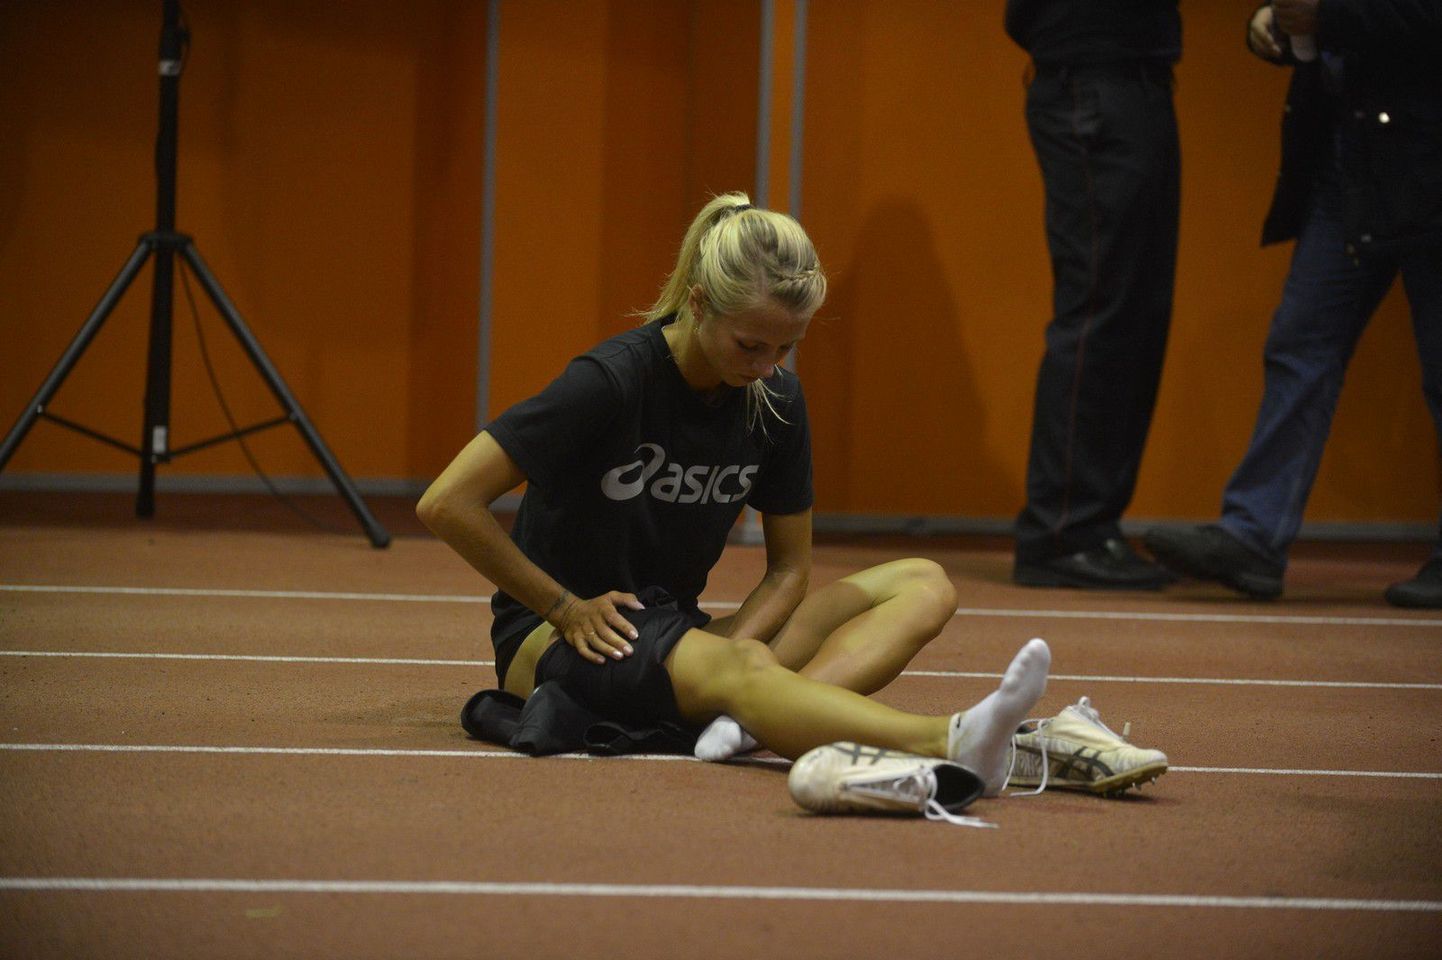 Grit Šadeiko jättis võistluse jalavigastuse tõttu pooleli.